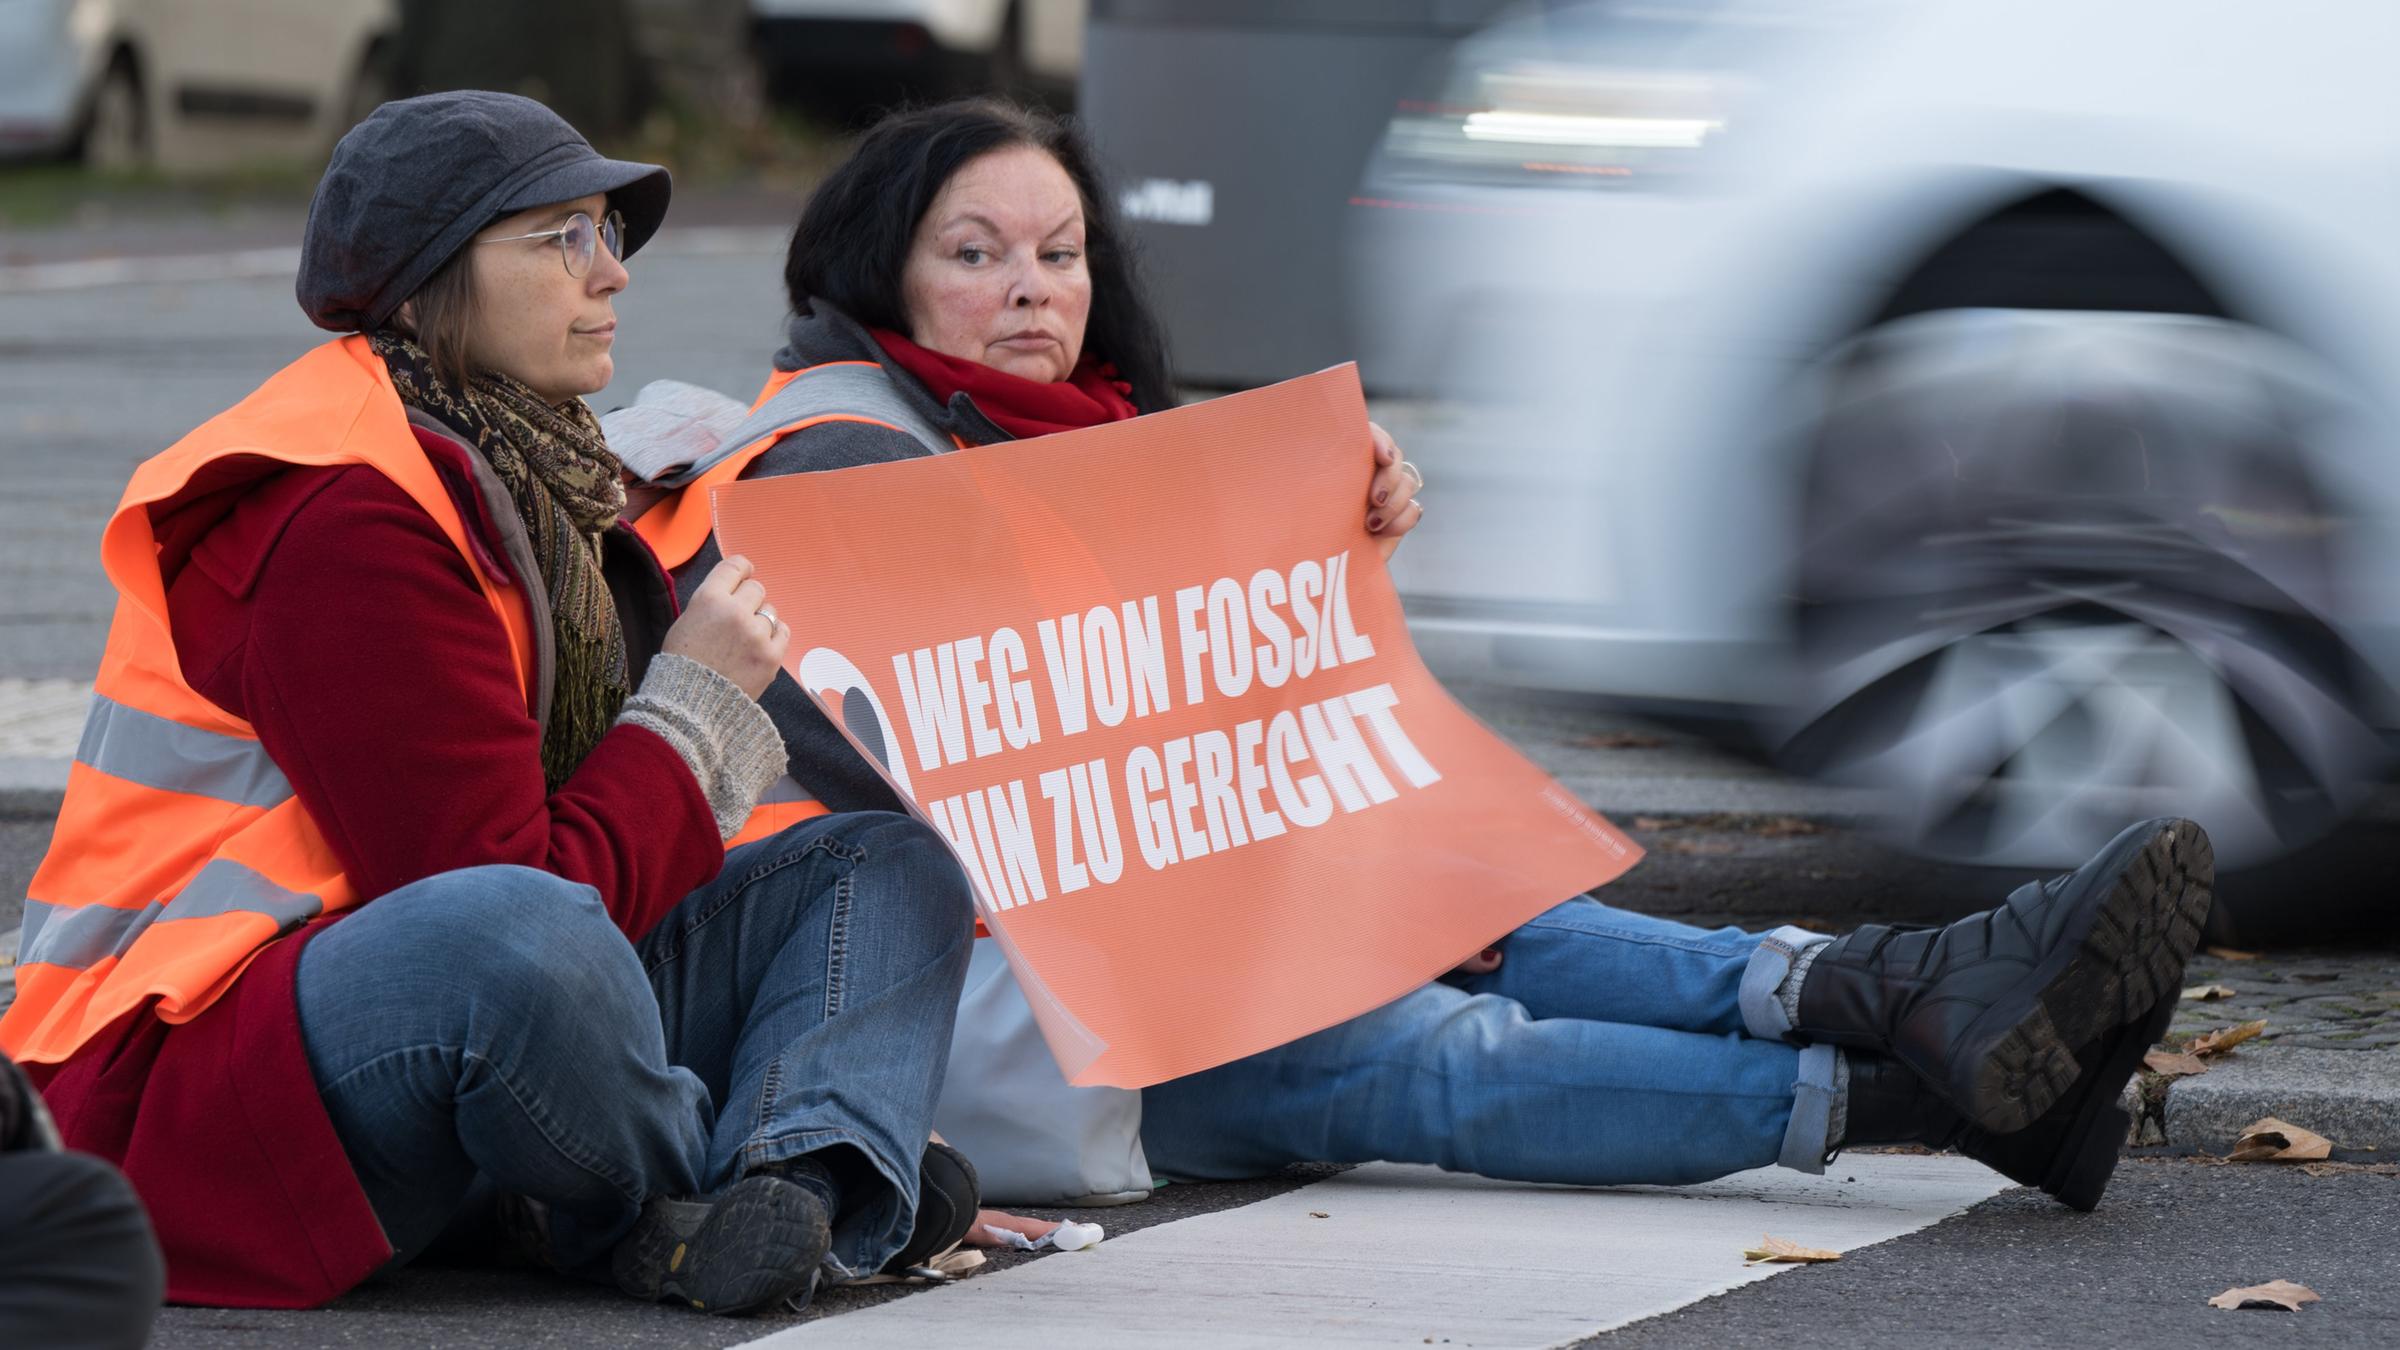 Aktivisten kleben während einer Straßenblockade der Klimaschutzgruppe "Letzte Generation" auf dem Asphalt.